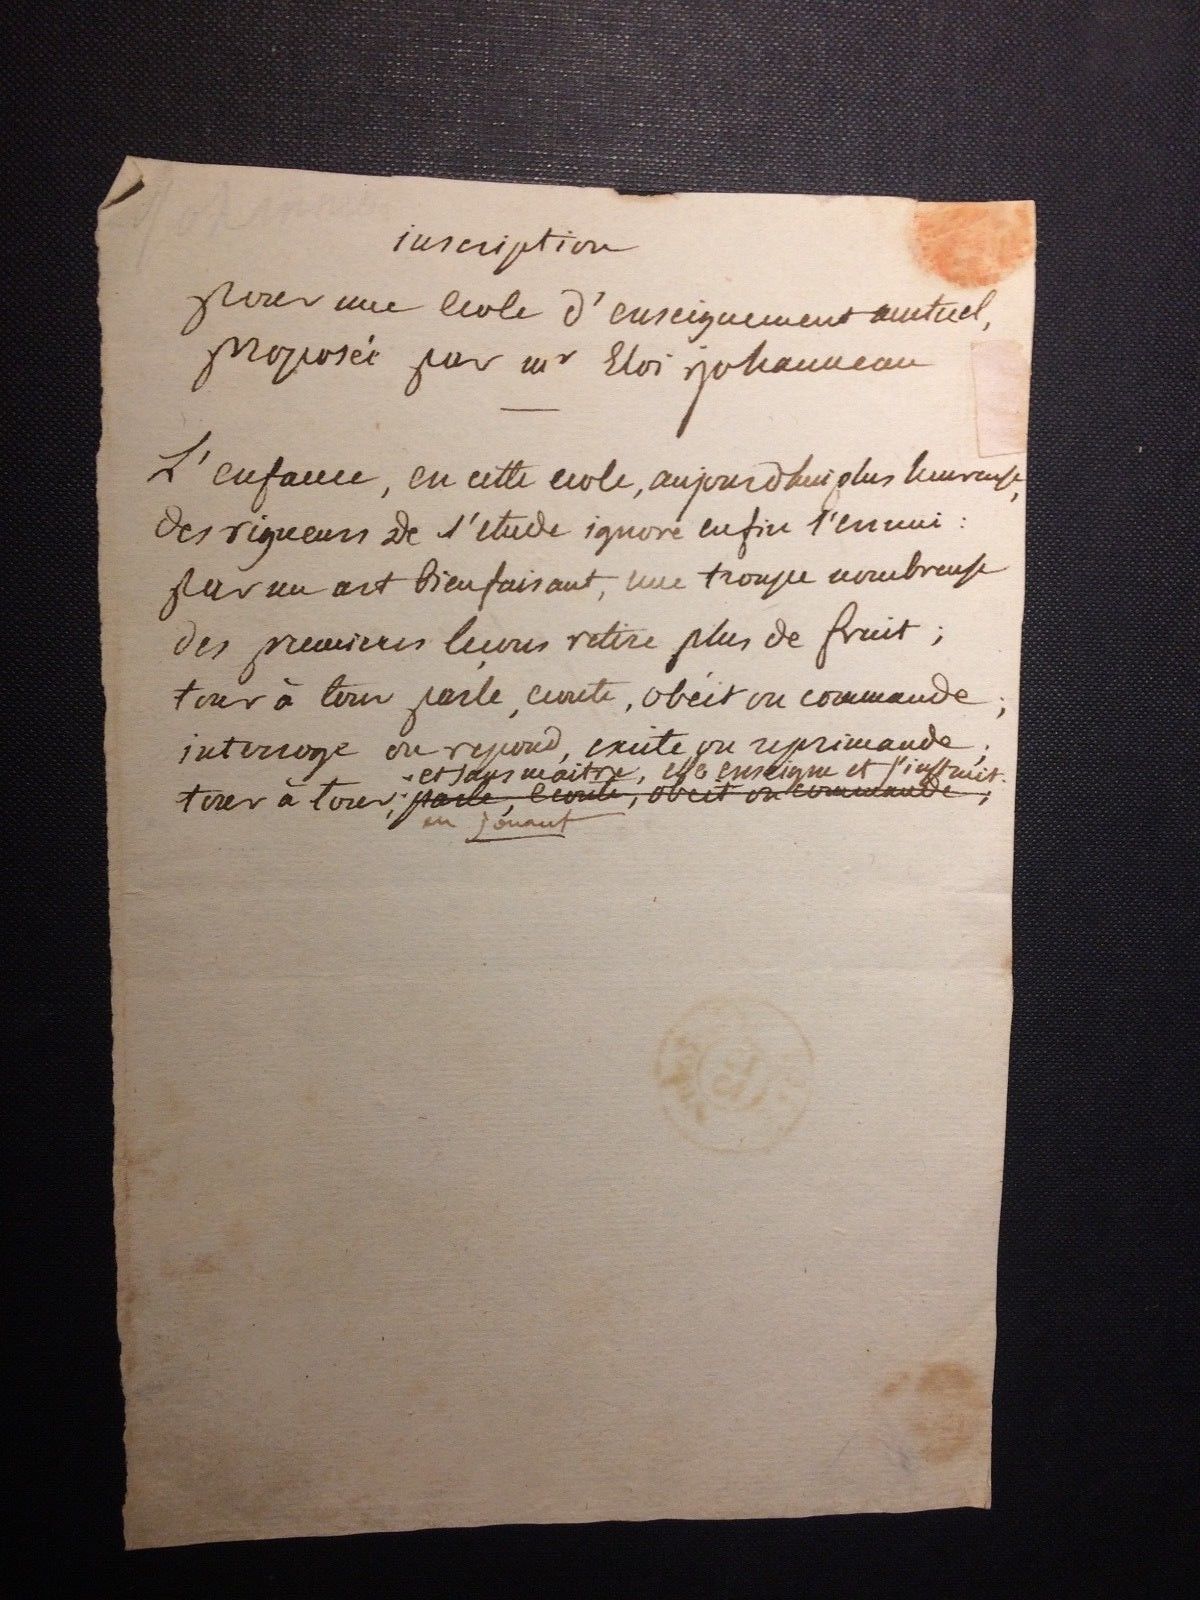 Eloi Johanneau Signed 1818 Autograph Letter Philologist Education Manuscript